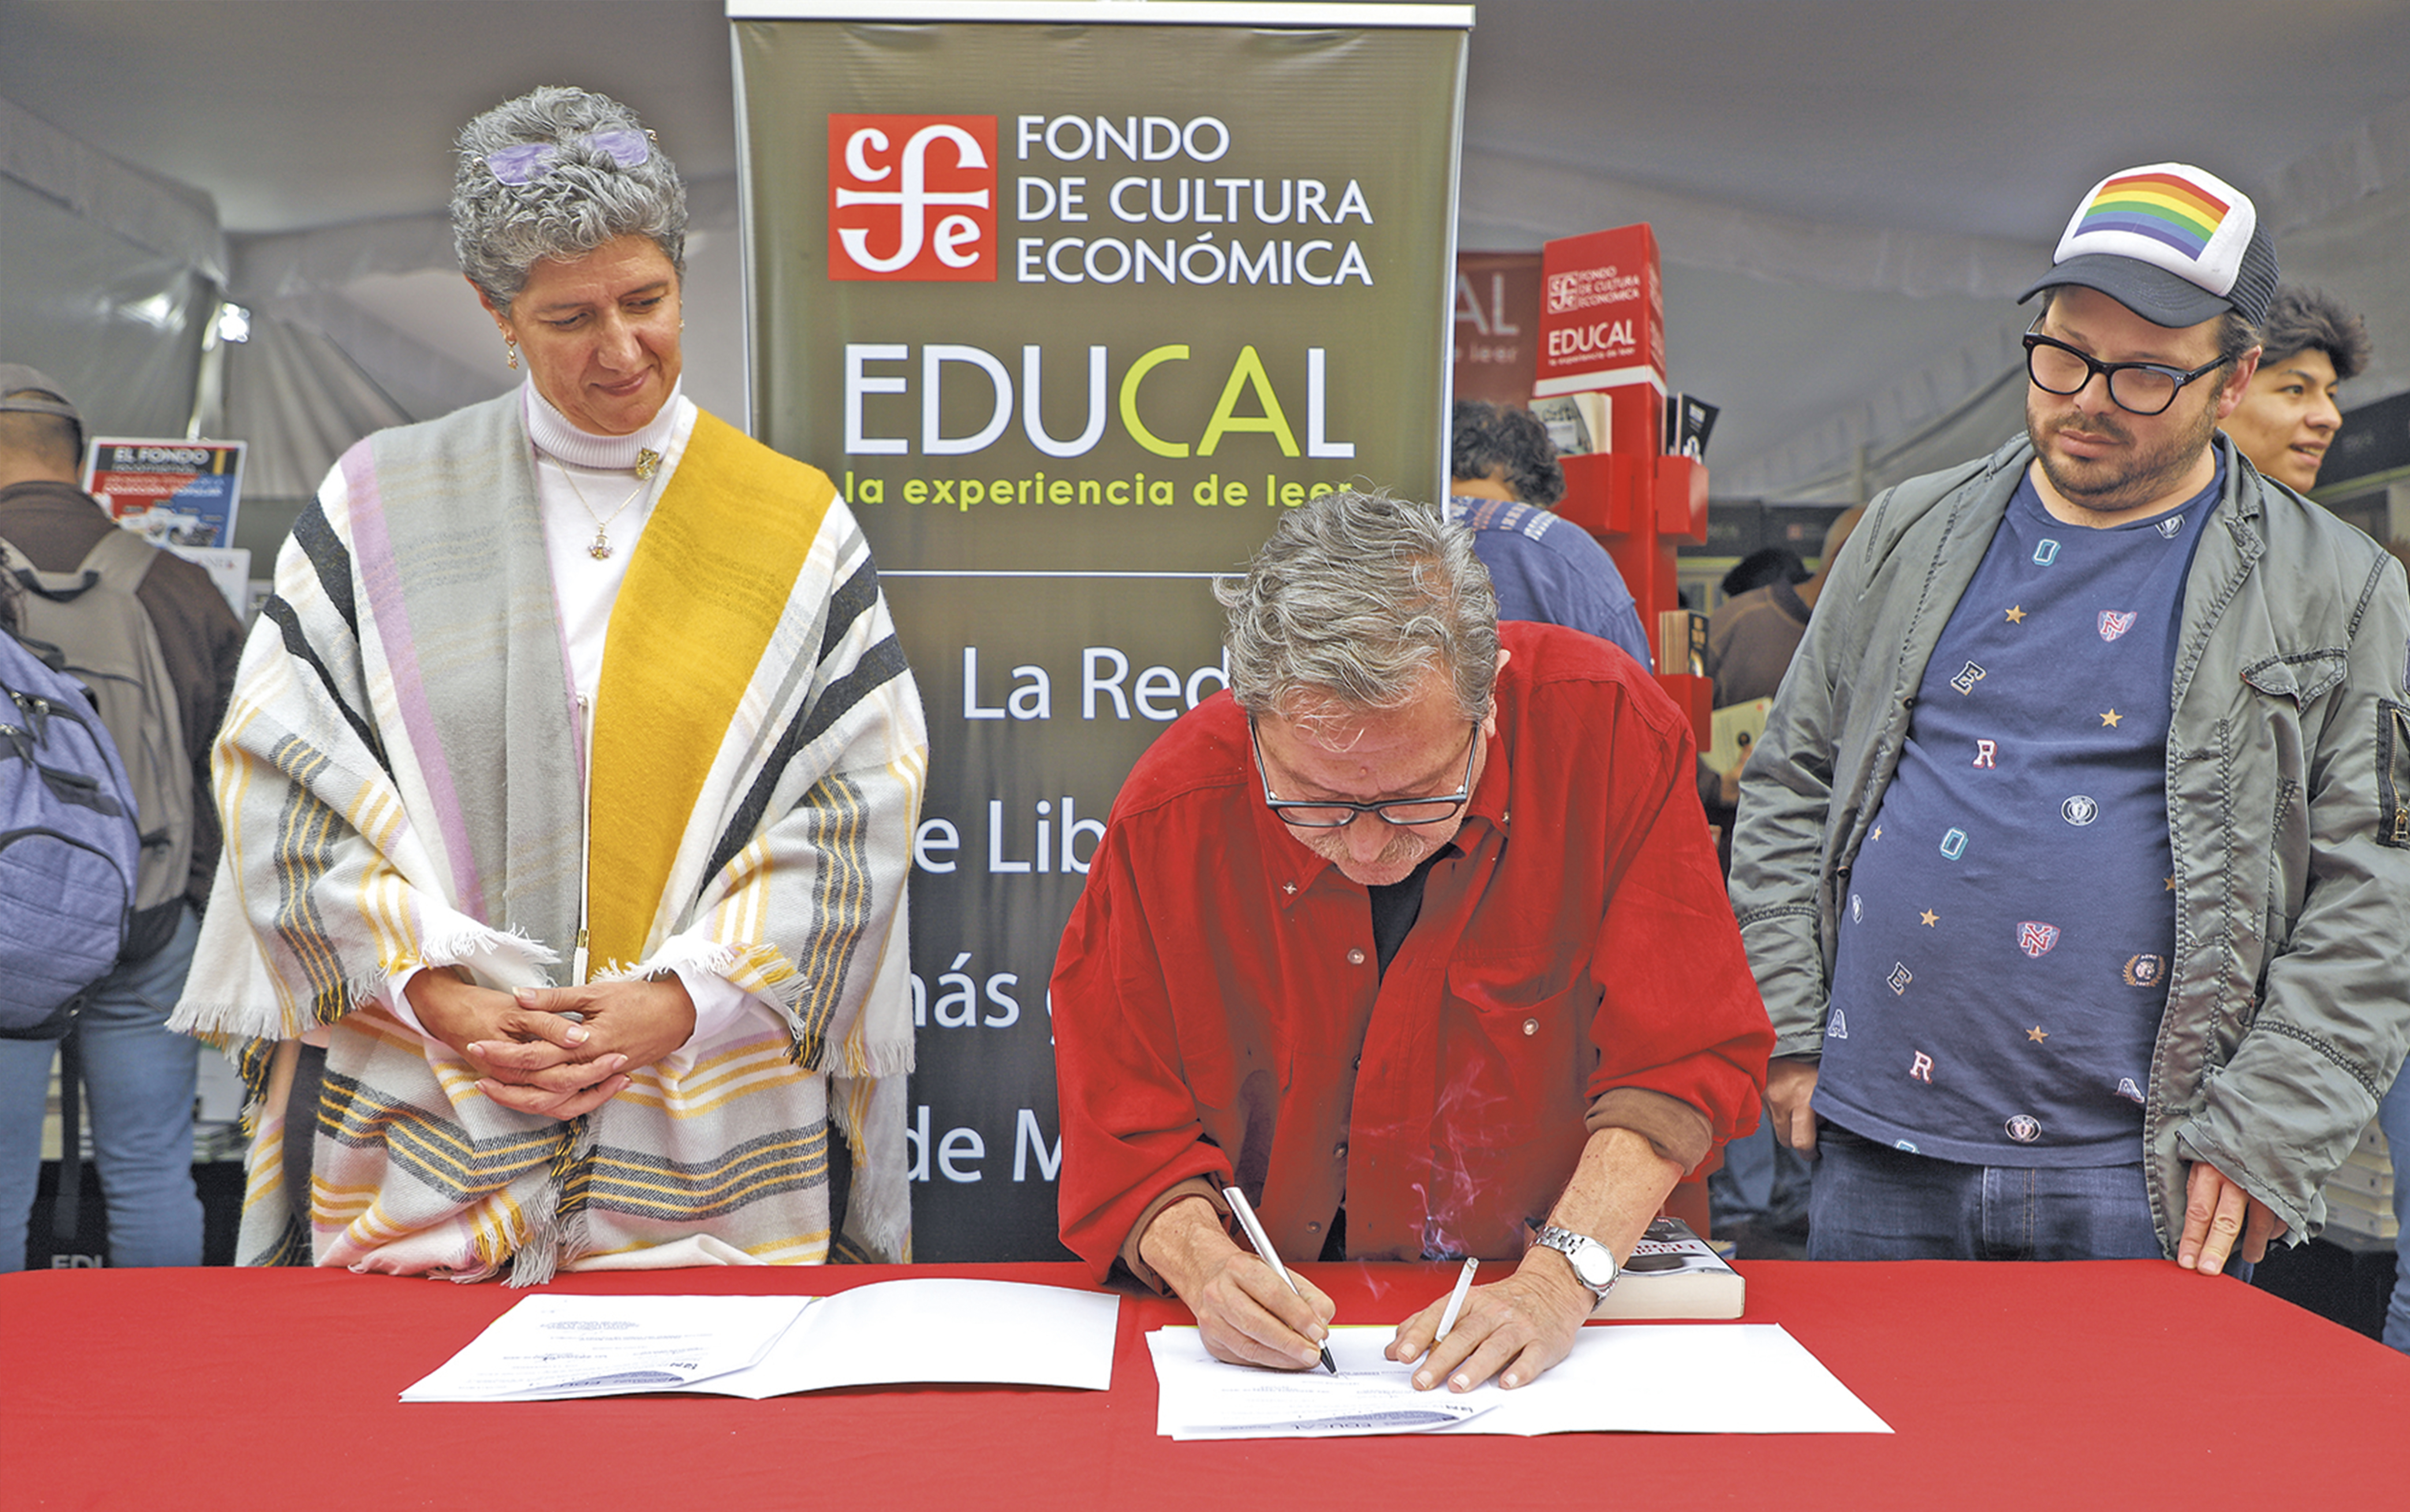 Teresa García Gasca firmó el convenio para realizar el tendido de libros con el director general del FCE, Paco Ignacio Taibo II, en el Zócalo de la Ciudad de México

